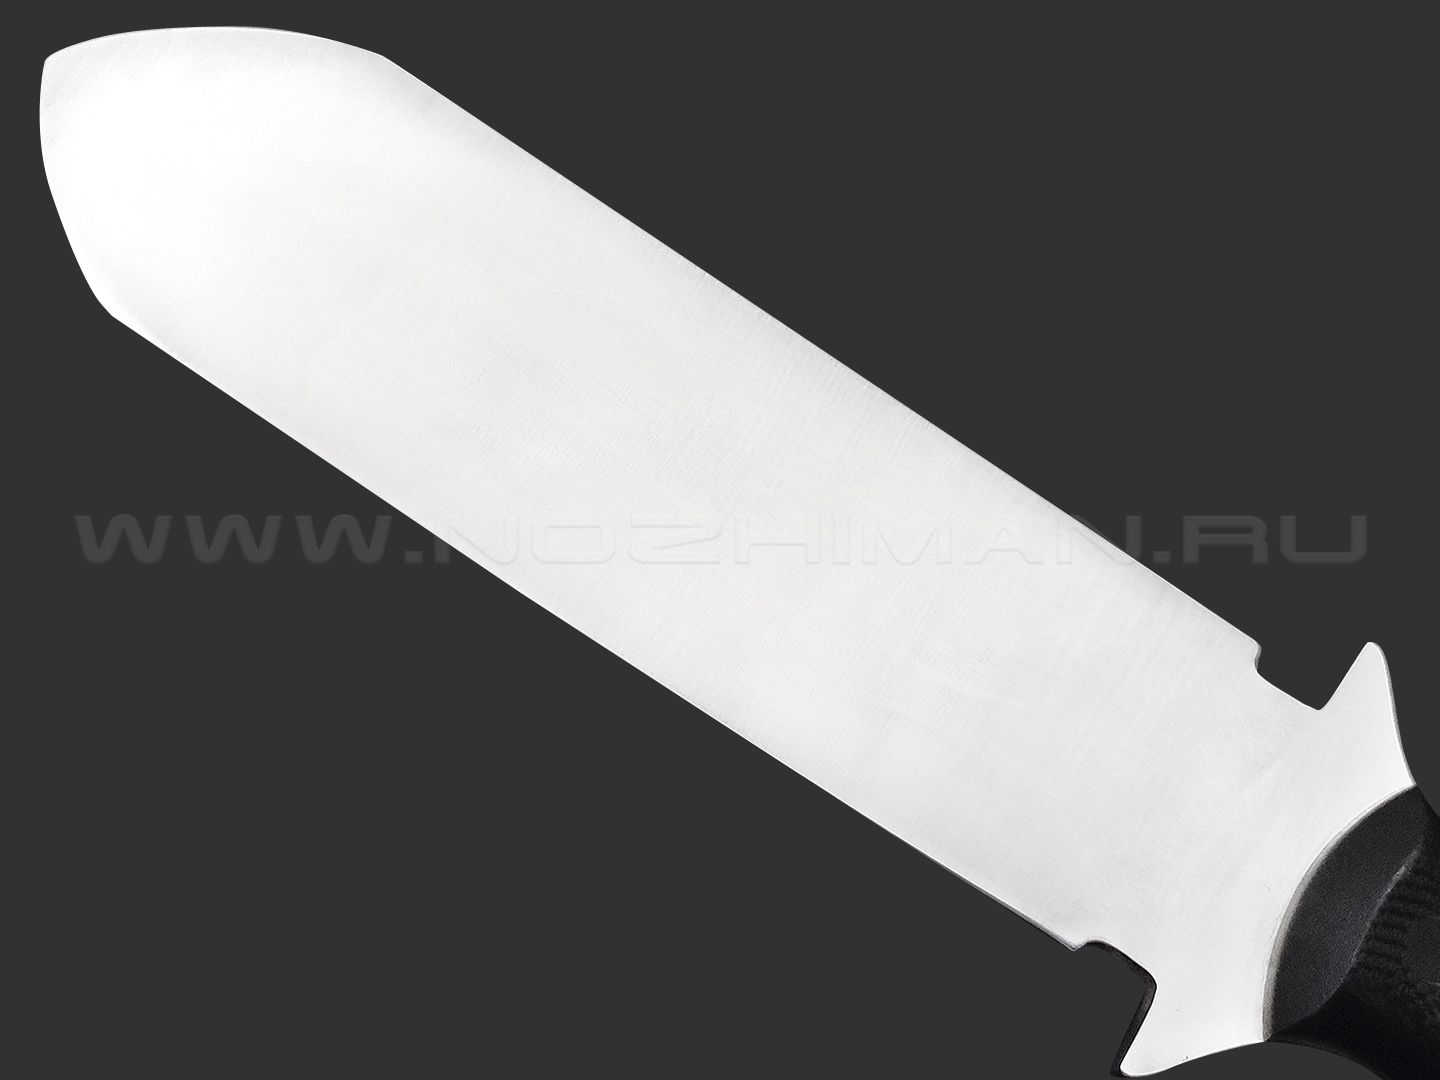 Волчий Век нож Lancette сталь N690 WA satin, рукоять G10 black